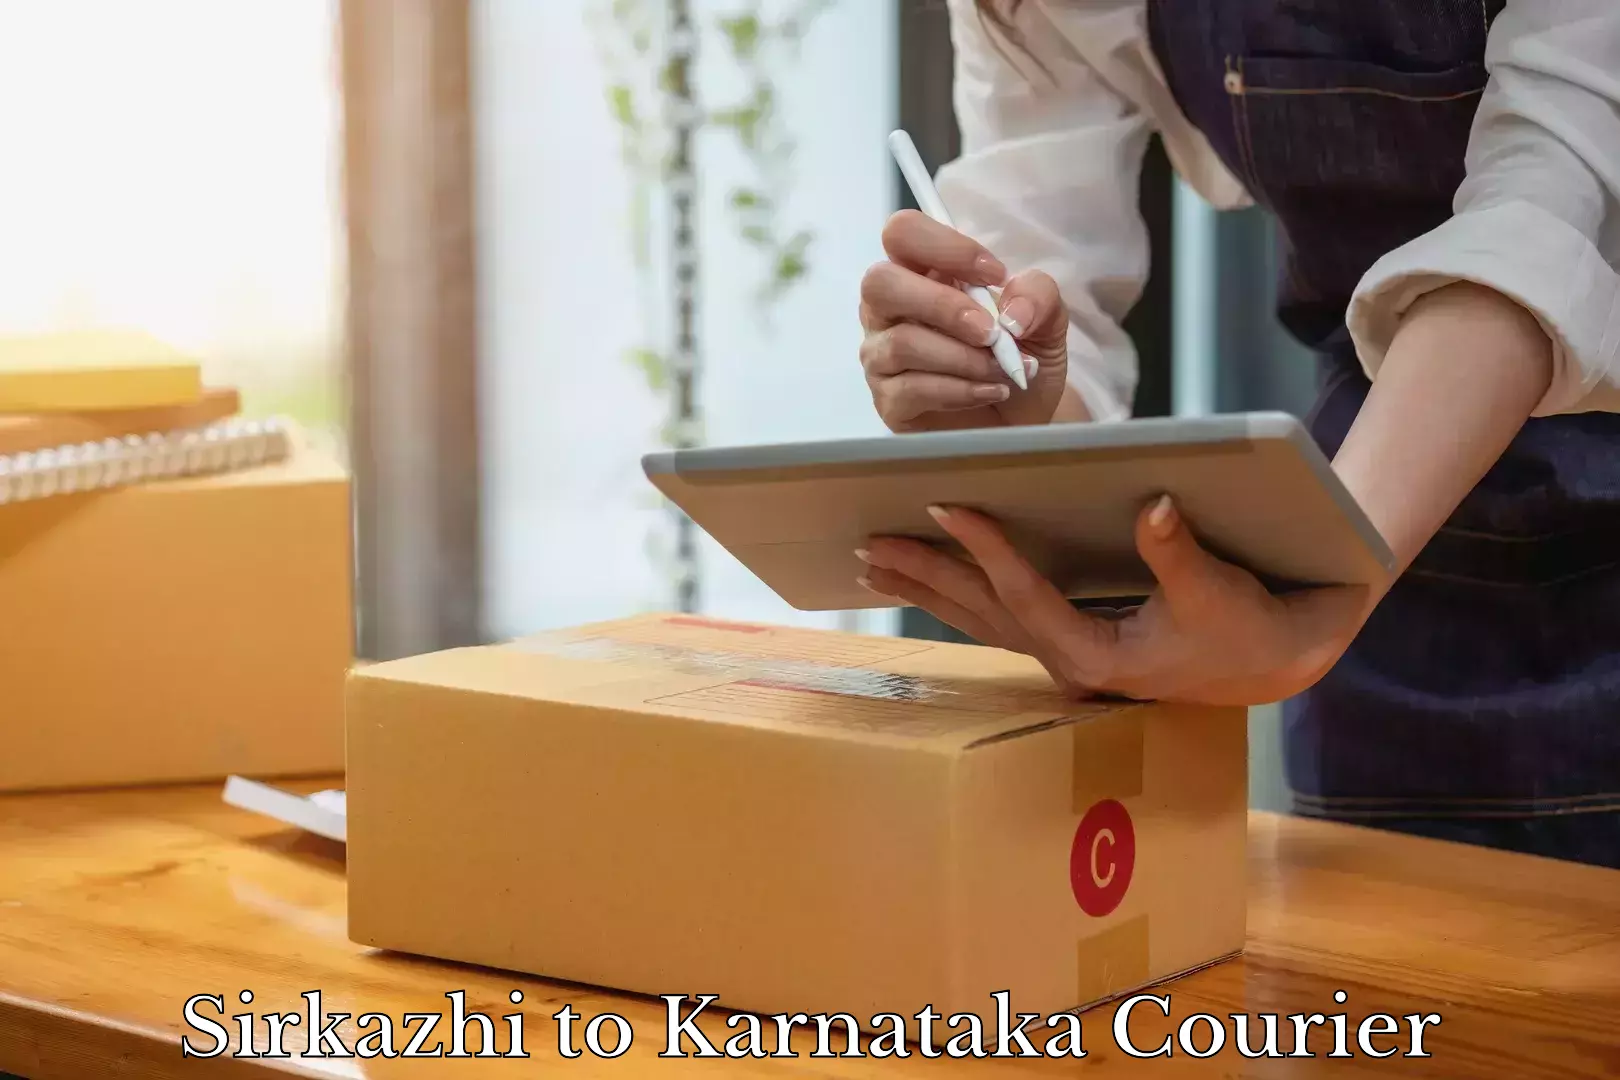 Nationwide luggage courier Sirkazhi to Karnataka